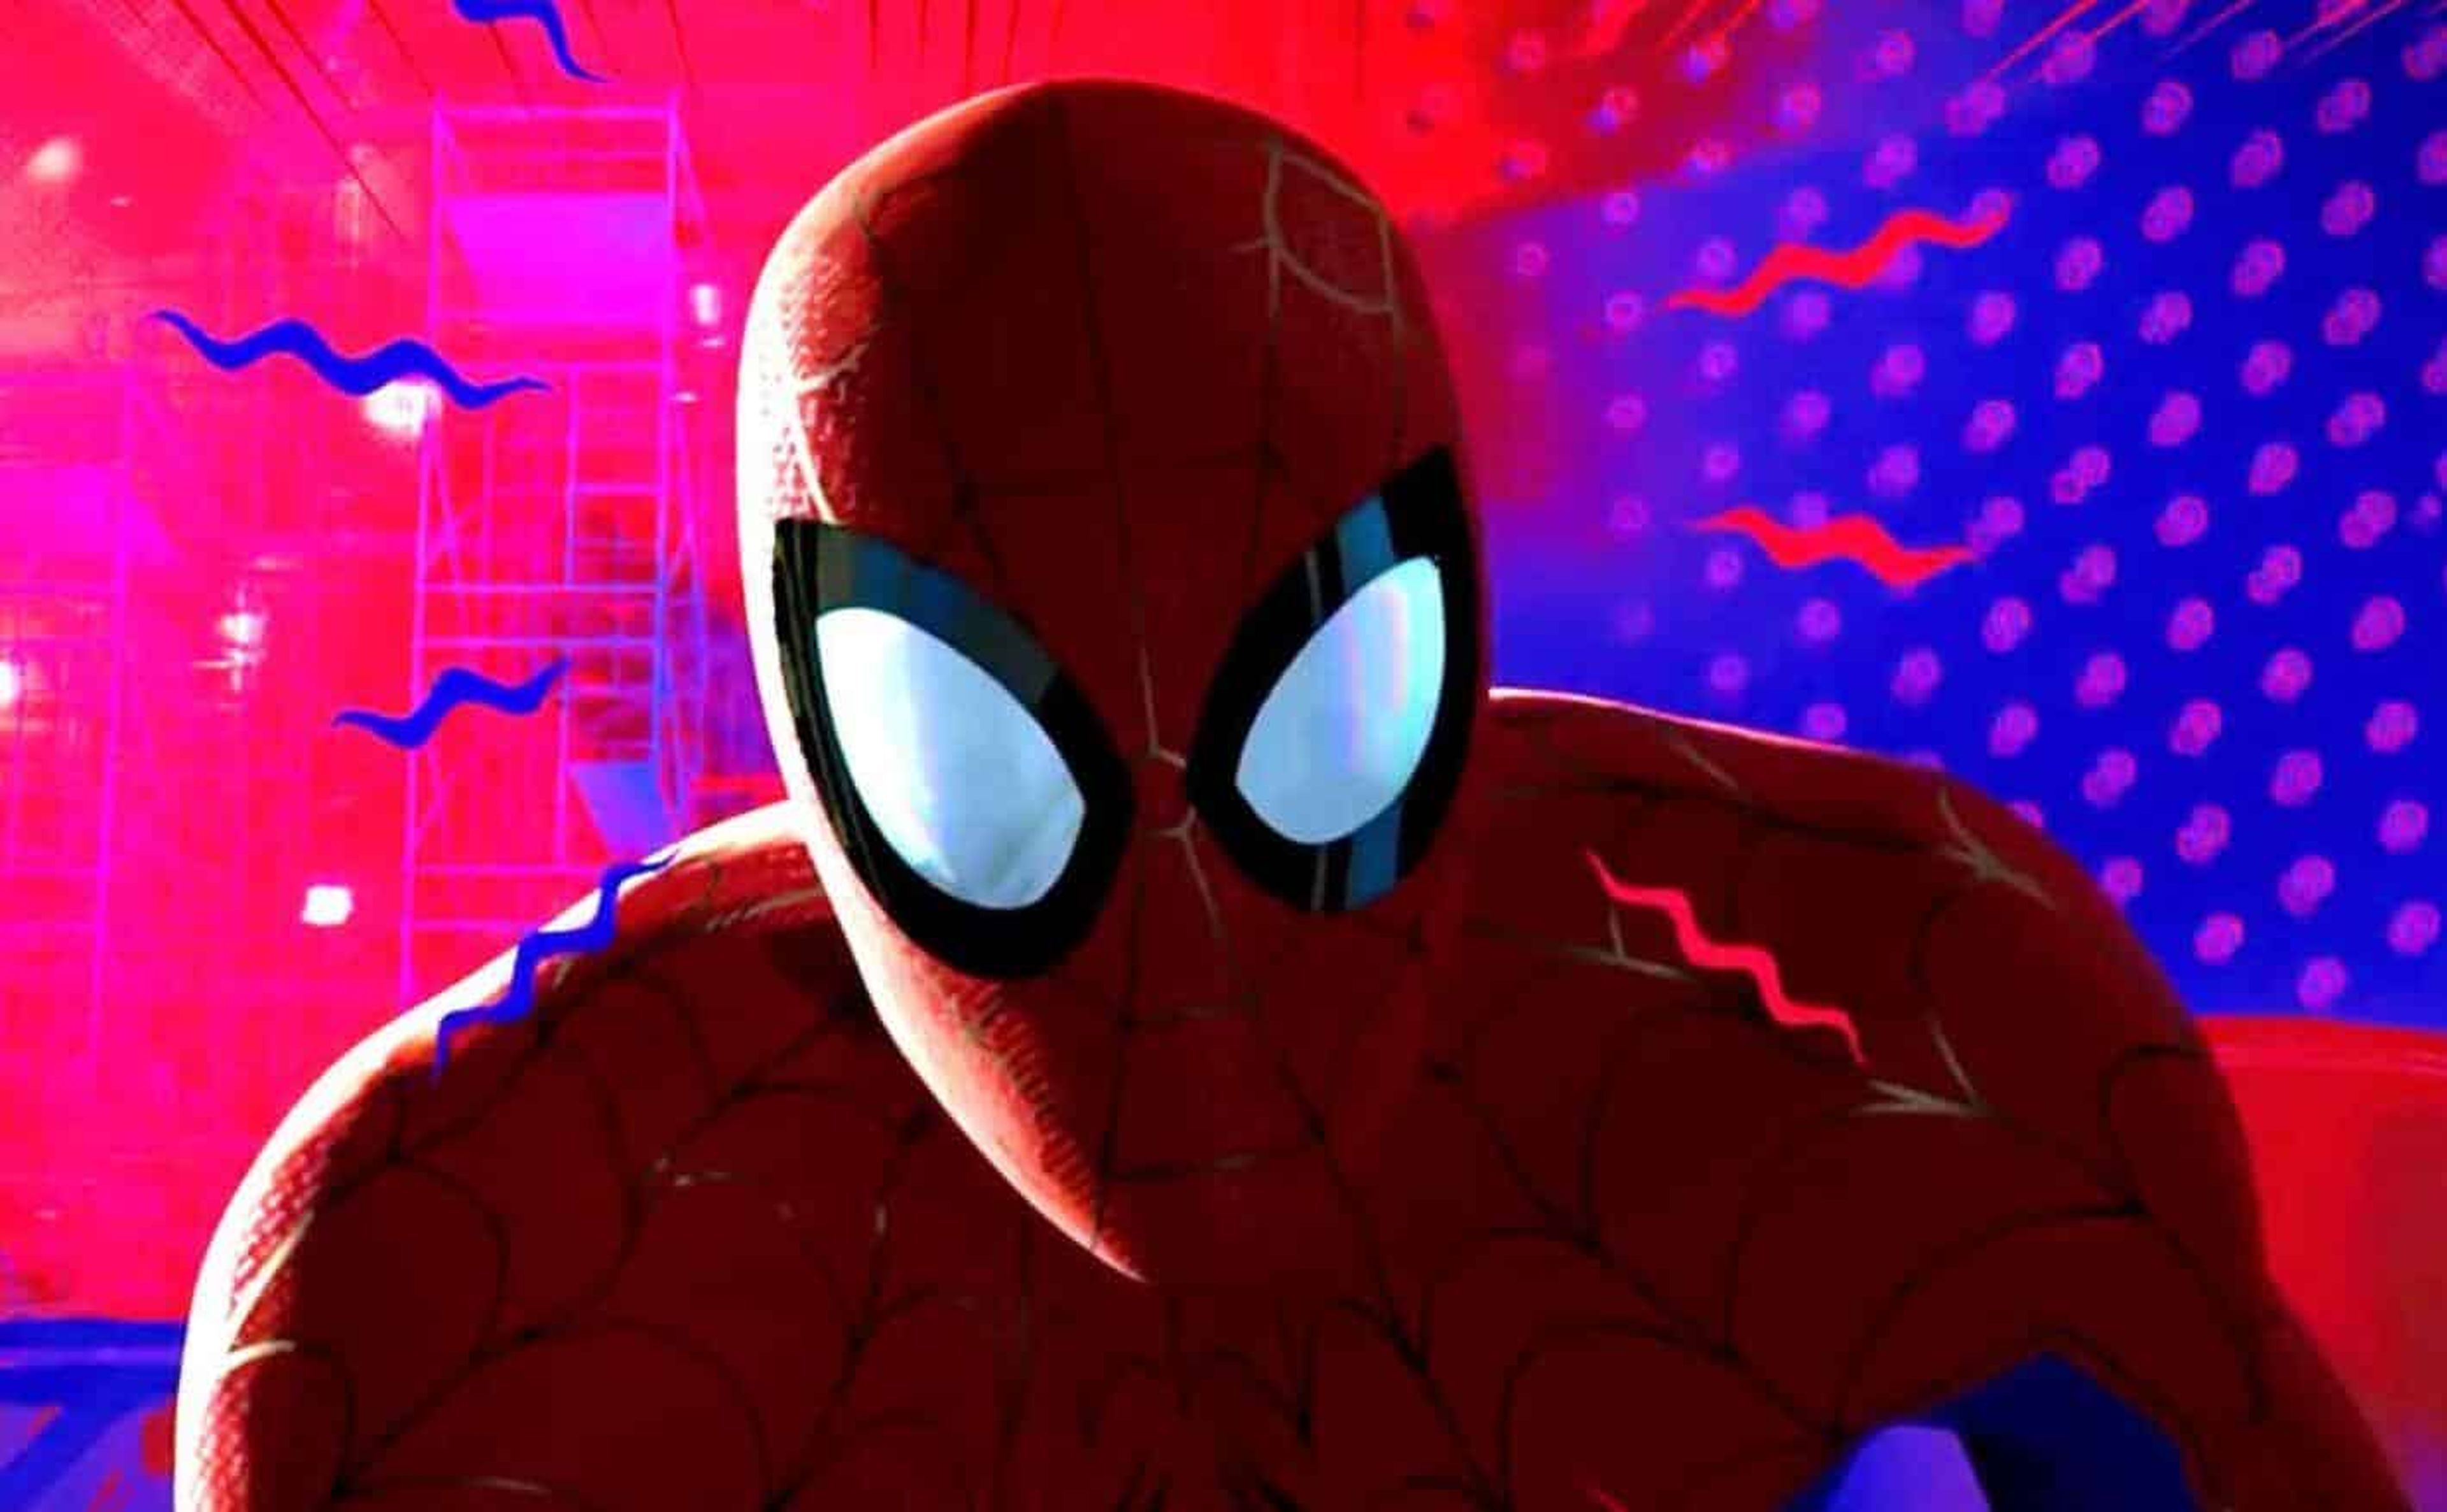 El sentido arácnido de Spider-Man es uno de los elementos más famosos de la ficción que han instaurado un concepto y uso erróneo de la compleja intuición.